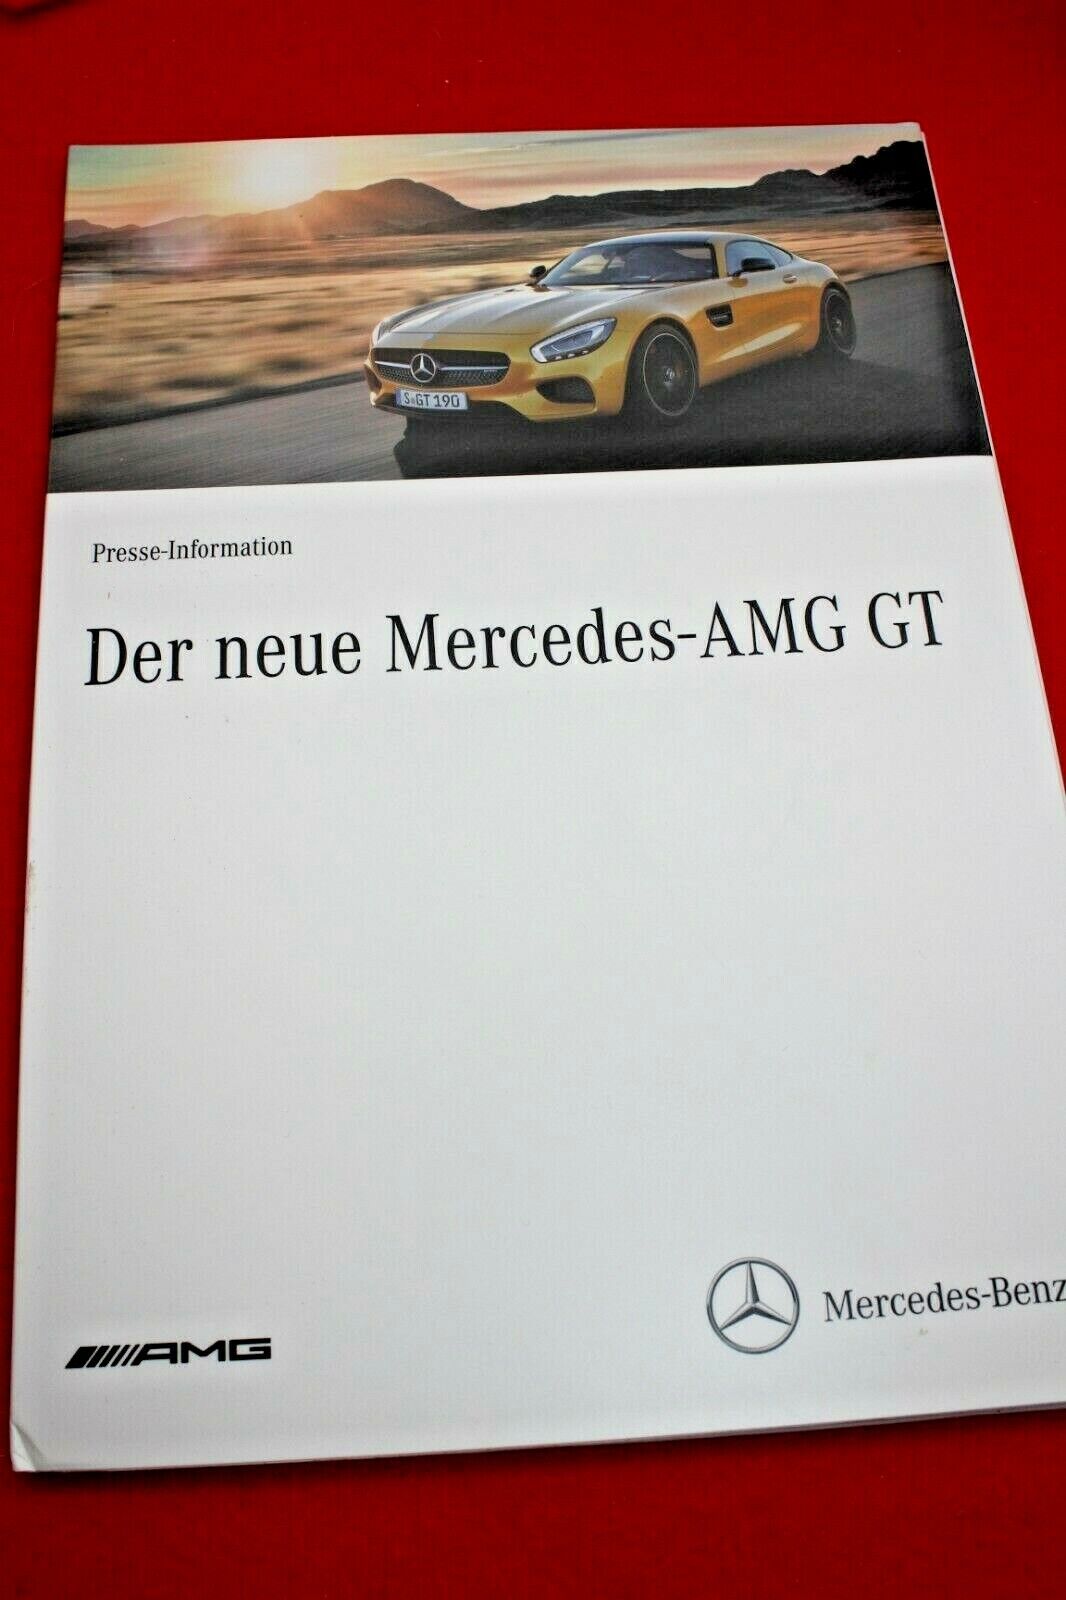 Mercedes Benz Press Kit the New AMG Gt 2014 USB & Many Photos Media Kit